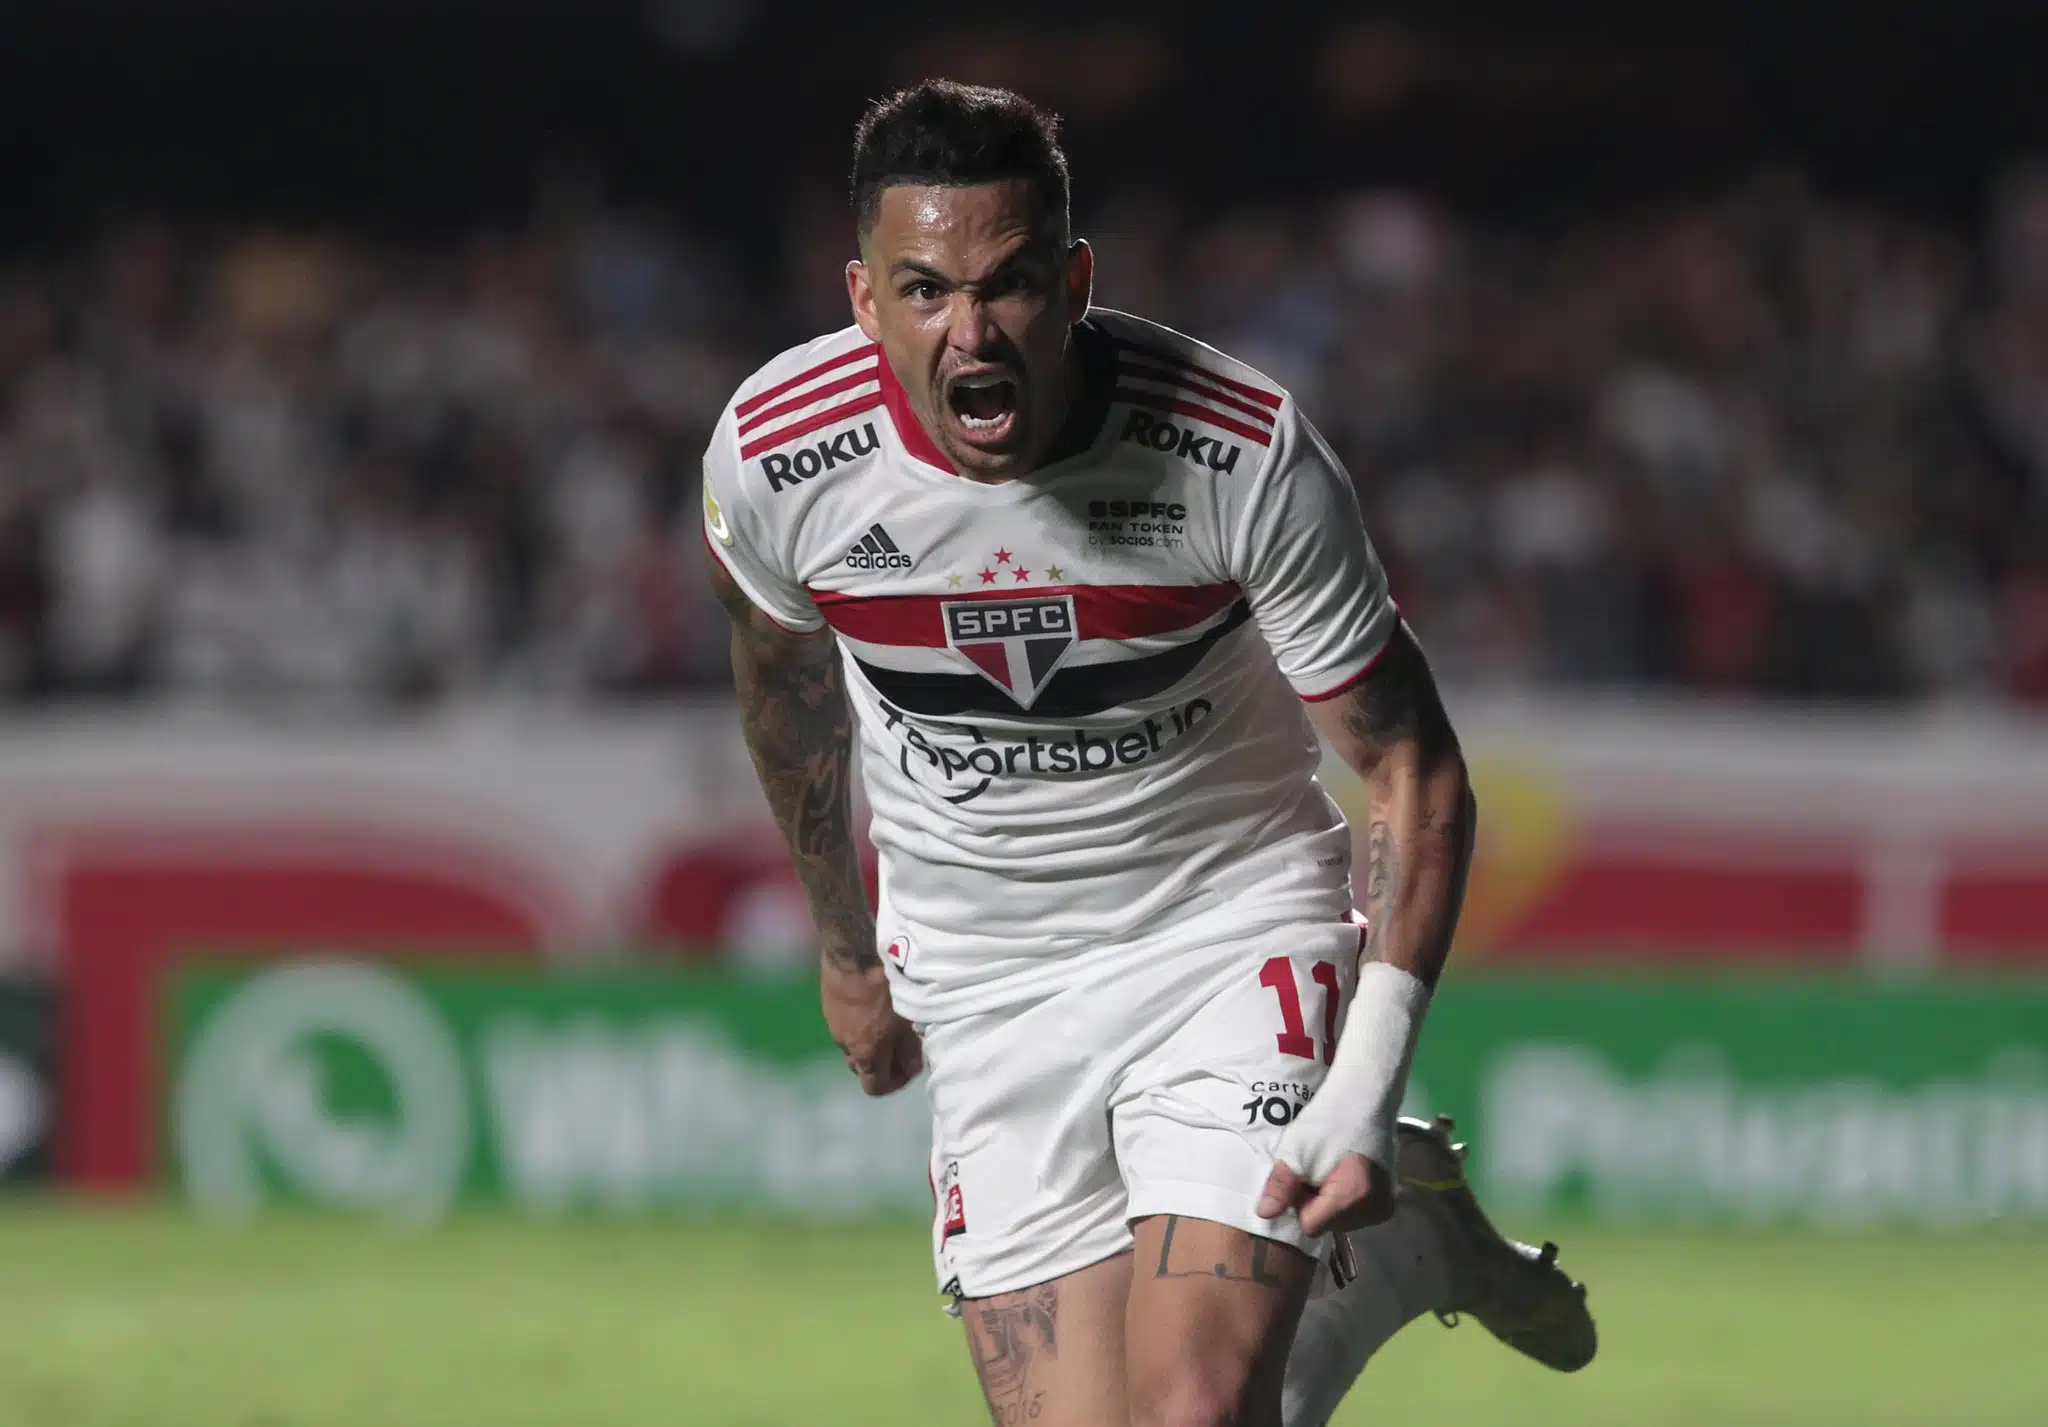 "Quero ajudar ainda mais em campo", afirmou Luciano após renovação de contrato com o São Paulo